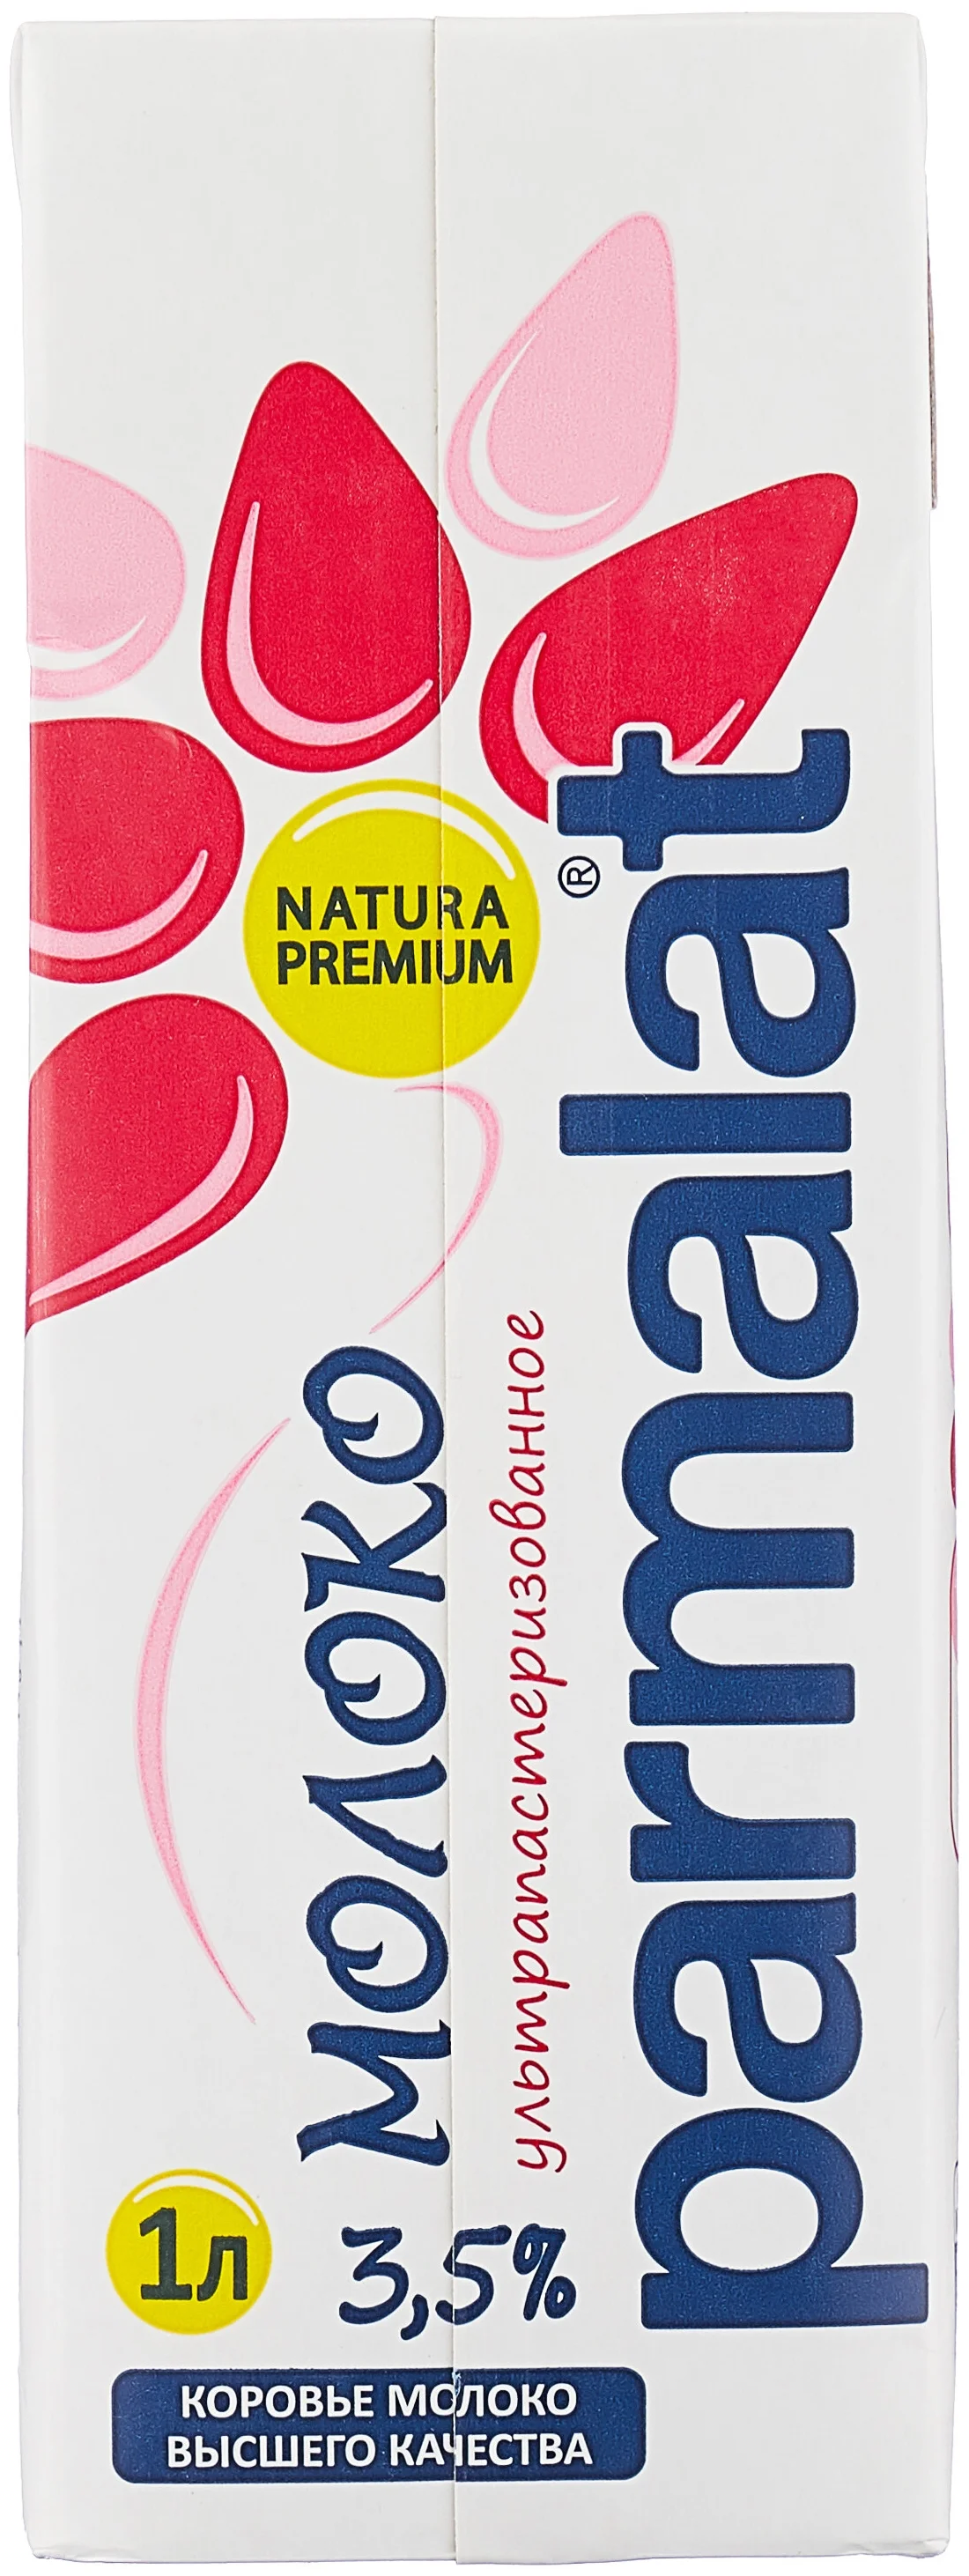 Parmalat Natura Premium 3.5%, 1 шт. 1 л - упаковка: тетра-пак